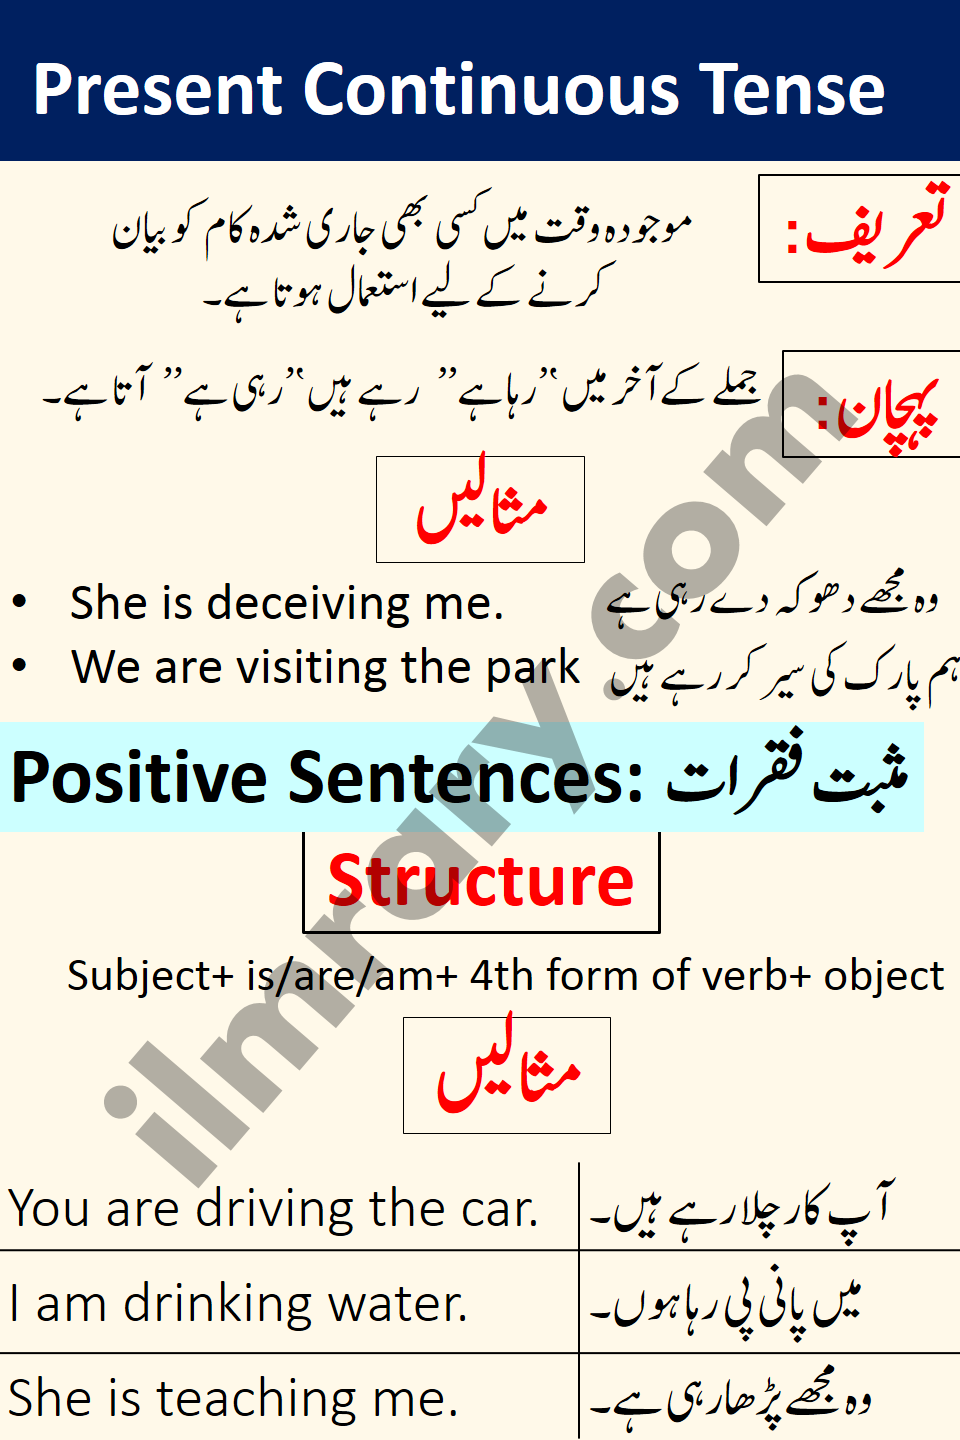 Positive Sentences for Present Continuous Tense in Urdu